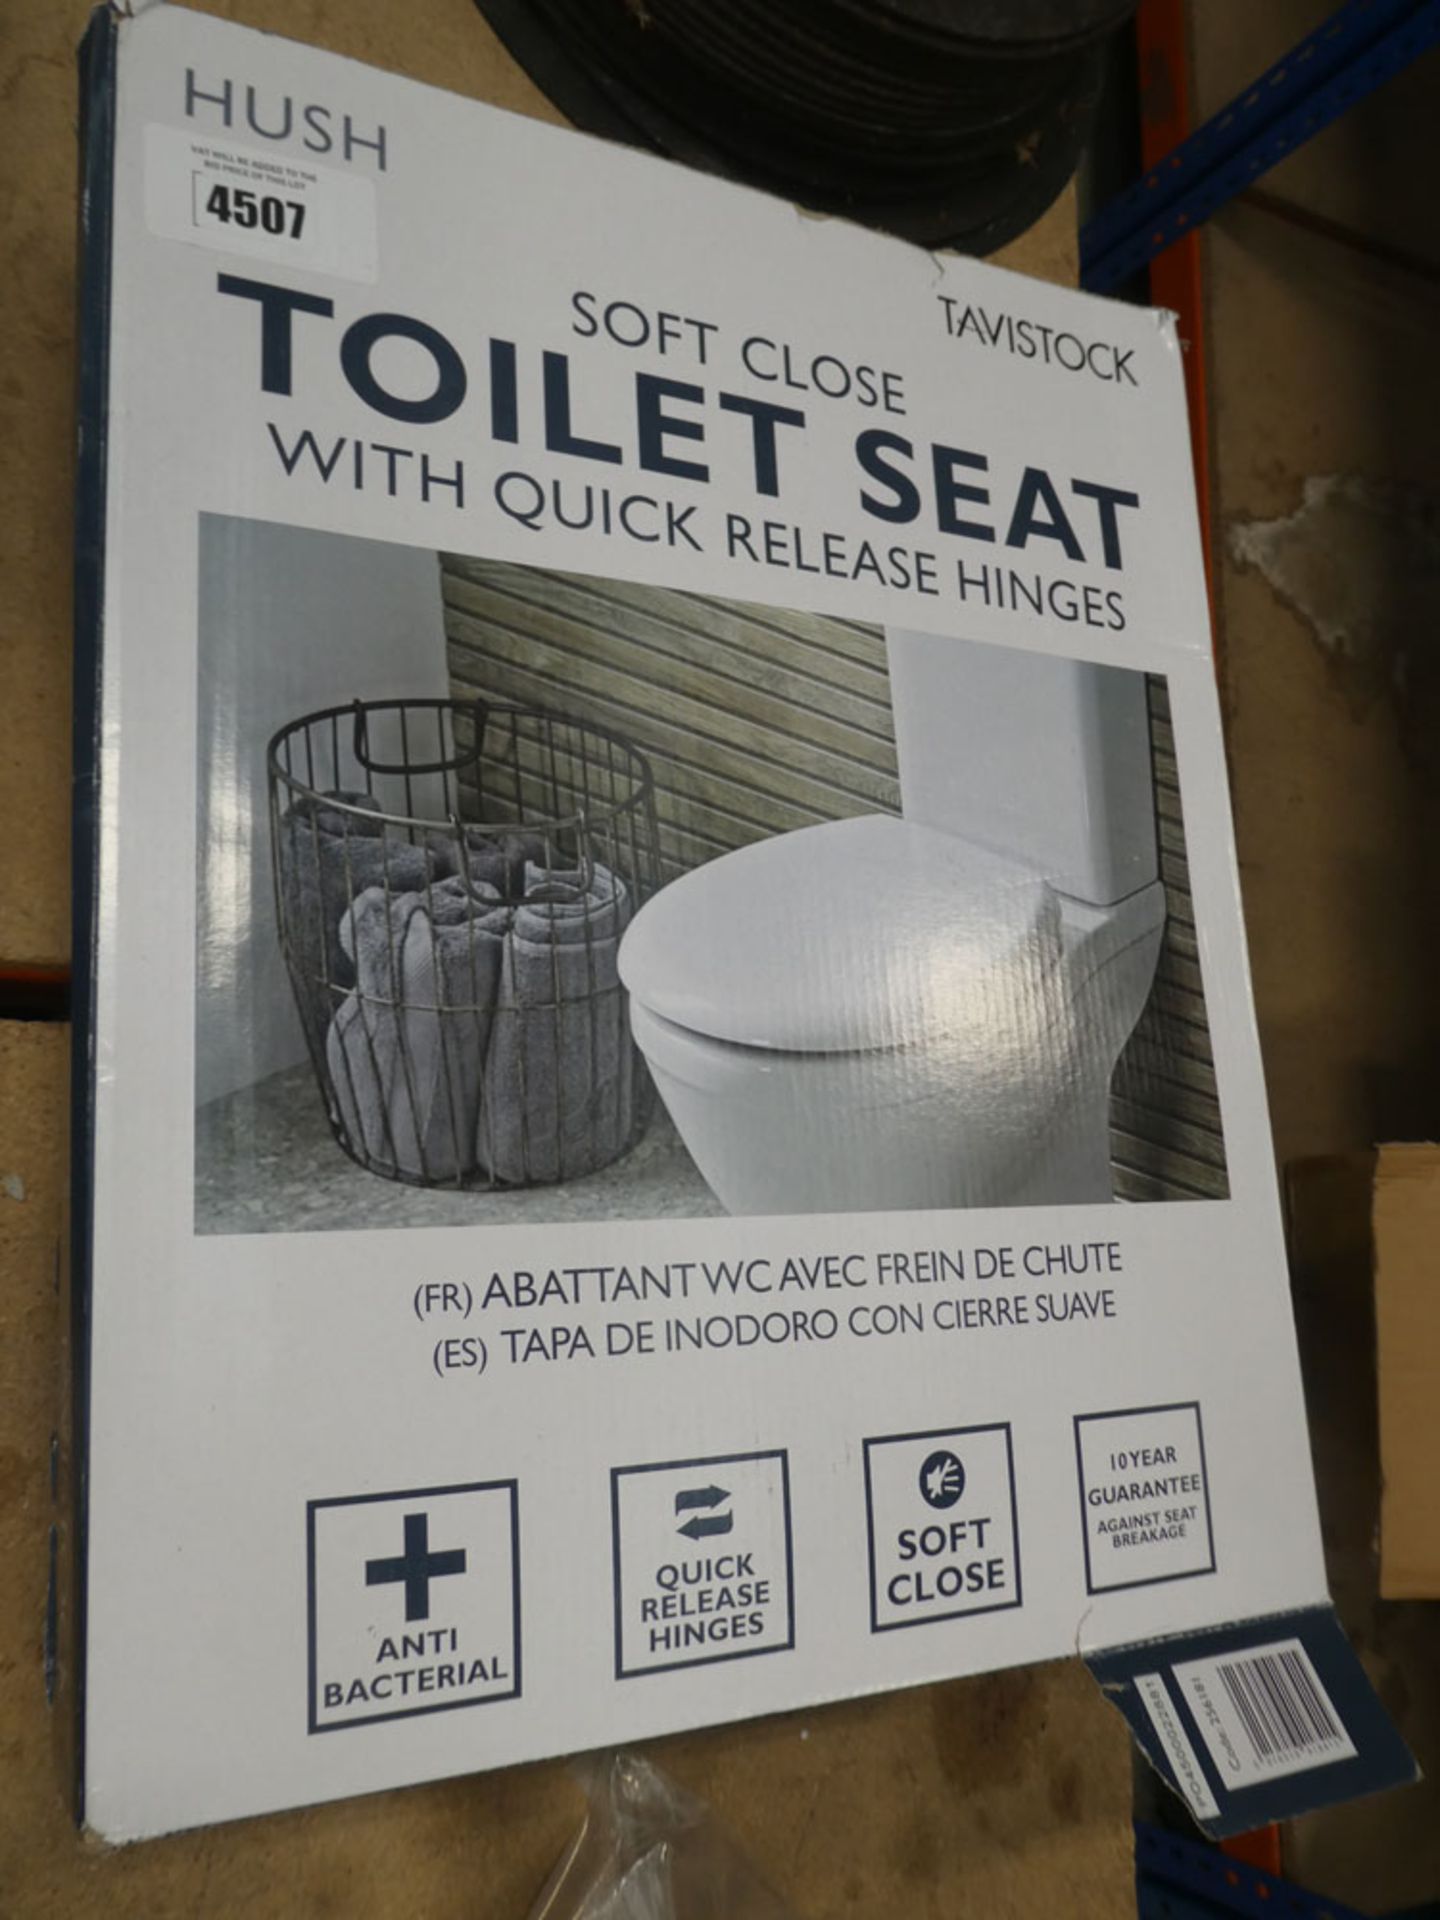 2x Tavistock toilet seats